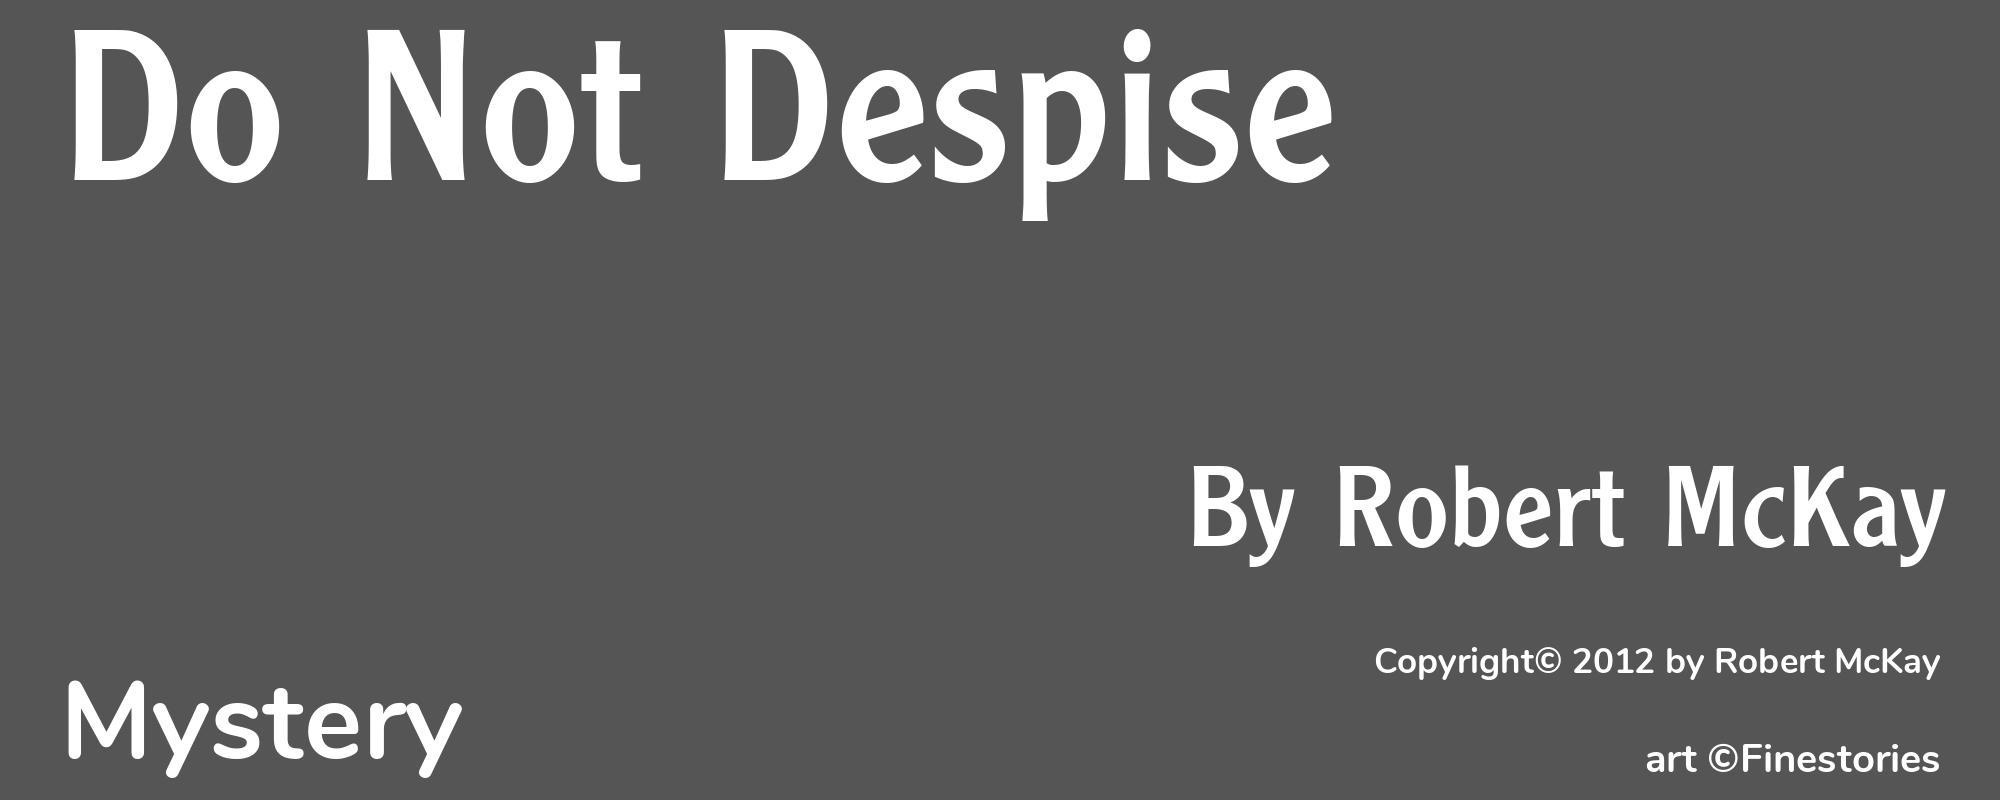 Do Not Despise - Cover